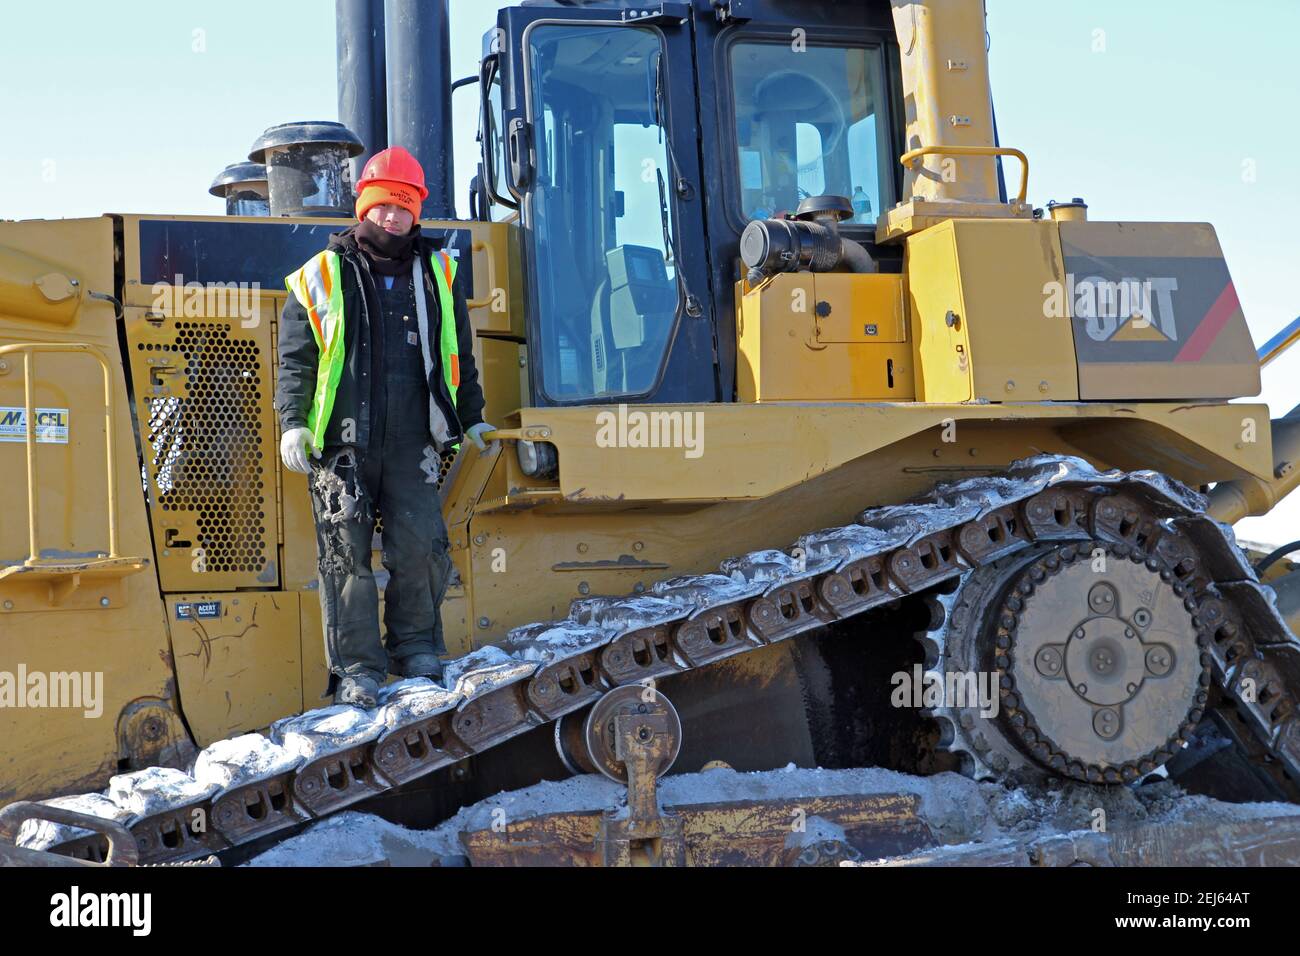 Opérateur d'équipement lourd autochtone debout sur un bulldozer, construction de la route Inuvik-Tuktoyaktuk, Territoires du Nord-Ouest, Arctique canadien. Banque D'Images